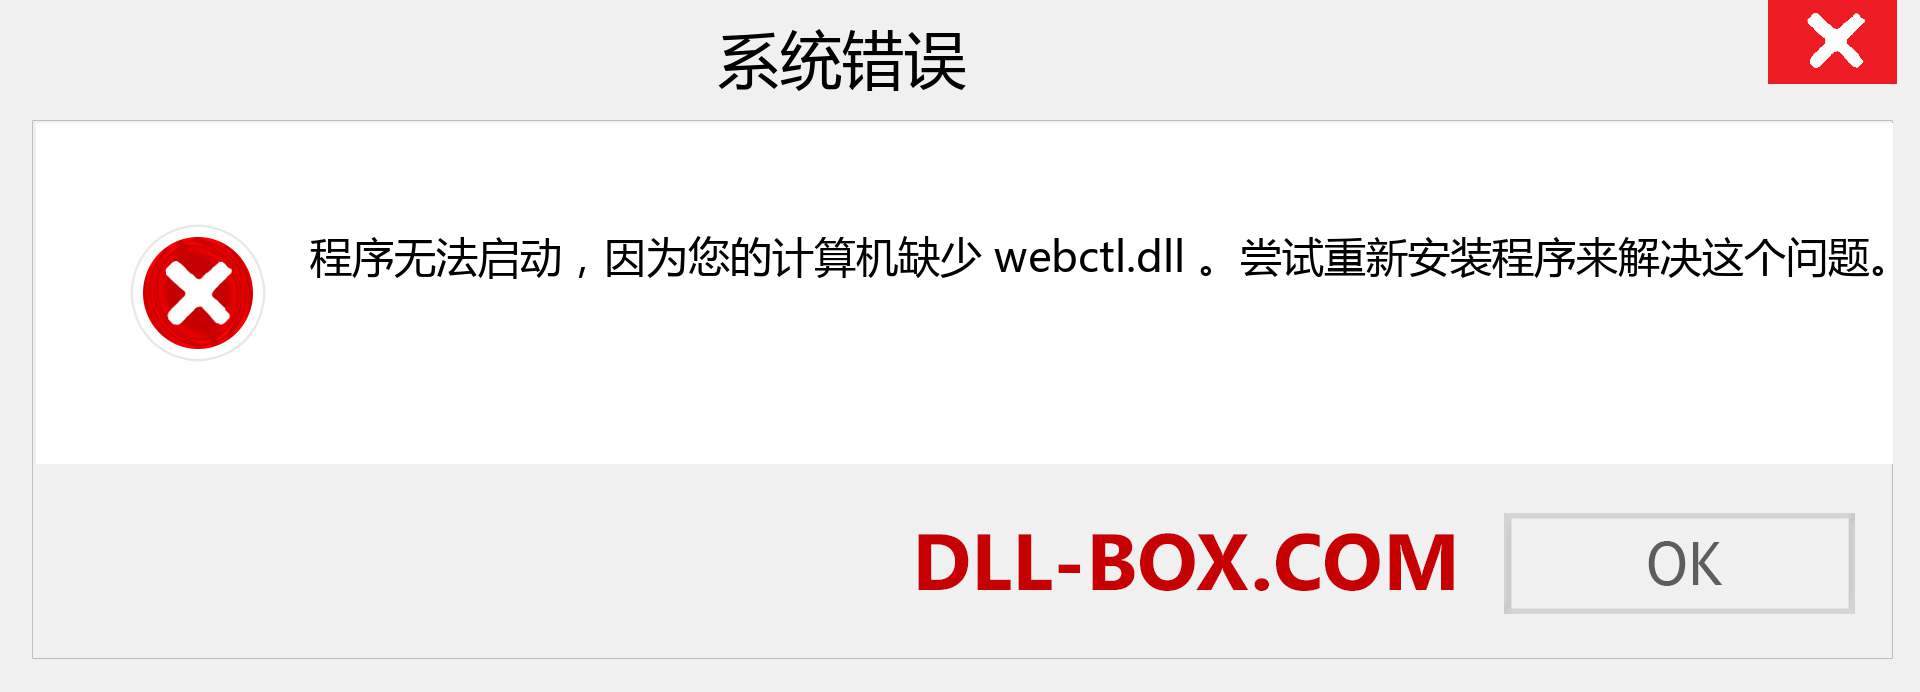 webctl.dll 文件丢失？。 适用于 Windows 7、8、10 的下载 - 修复 Windows、照片、图像上的 webctl dll 丢失错误